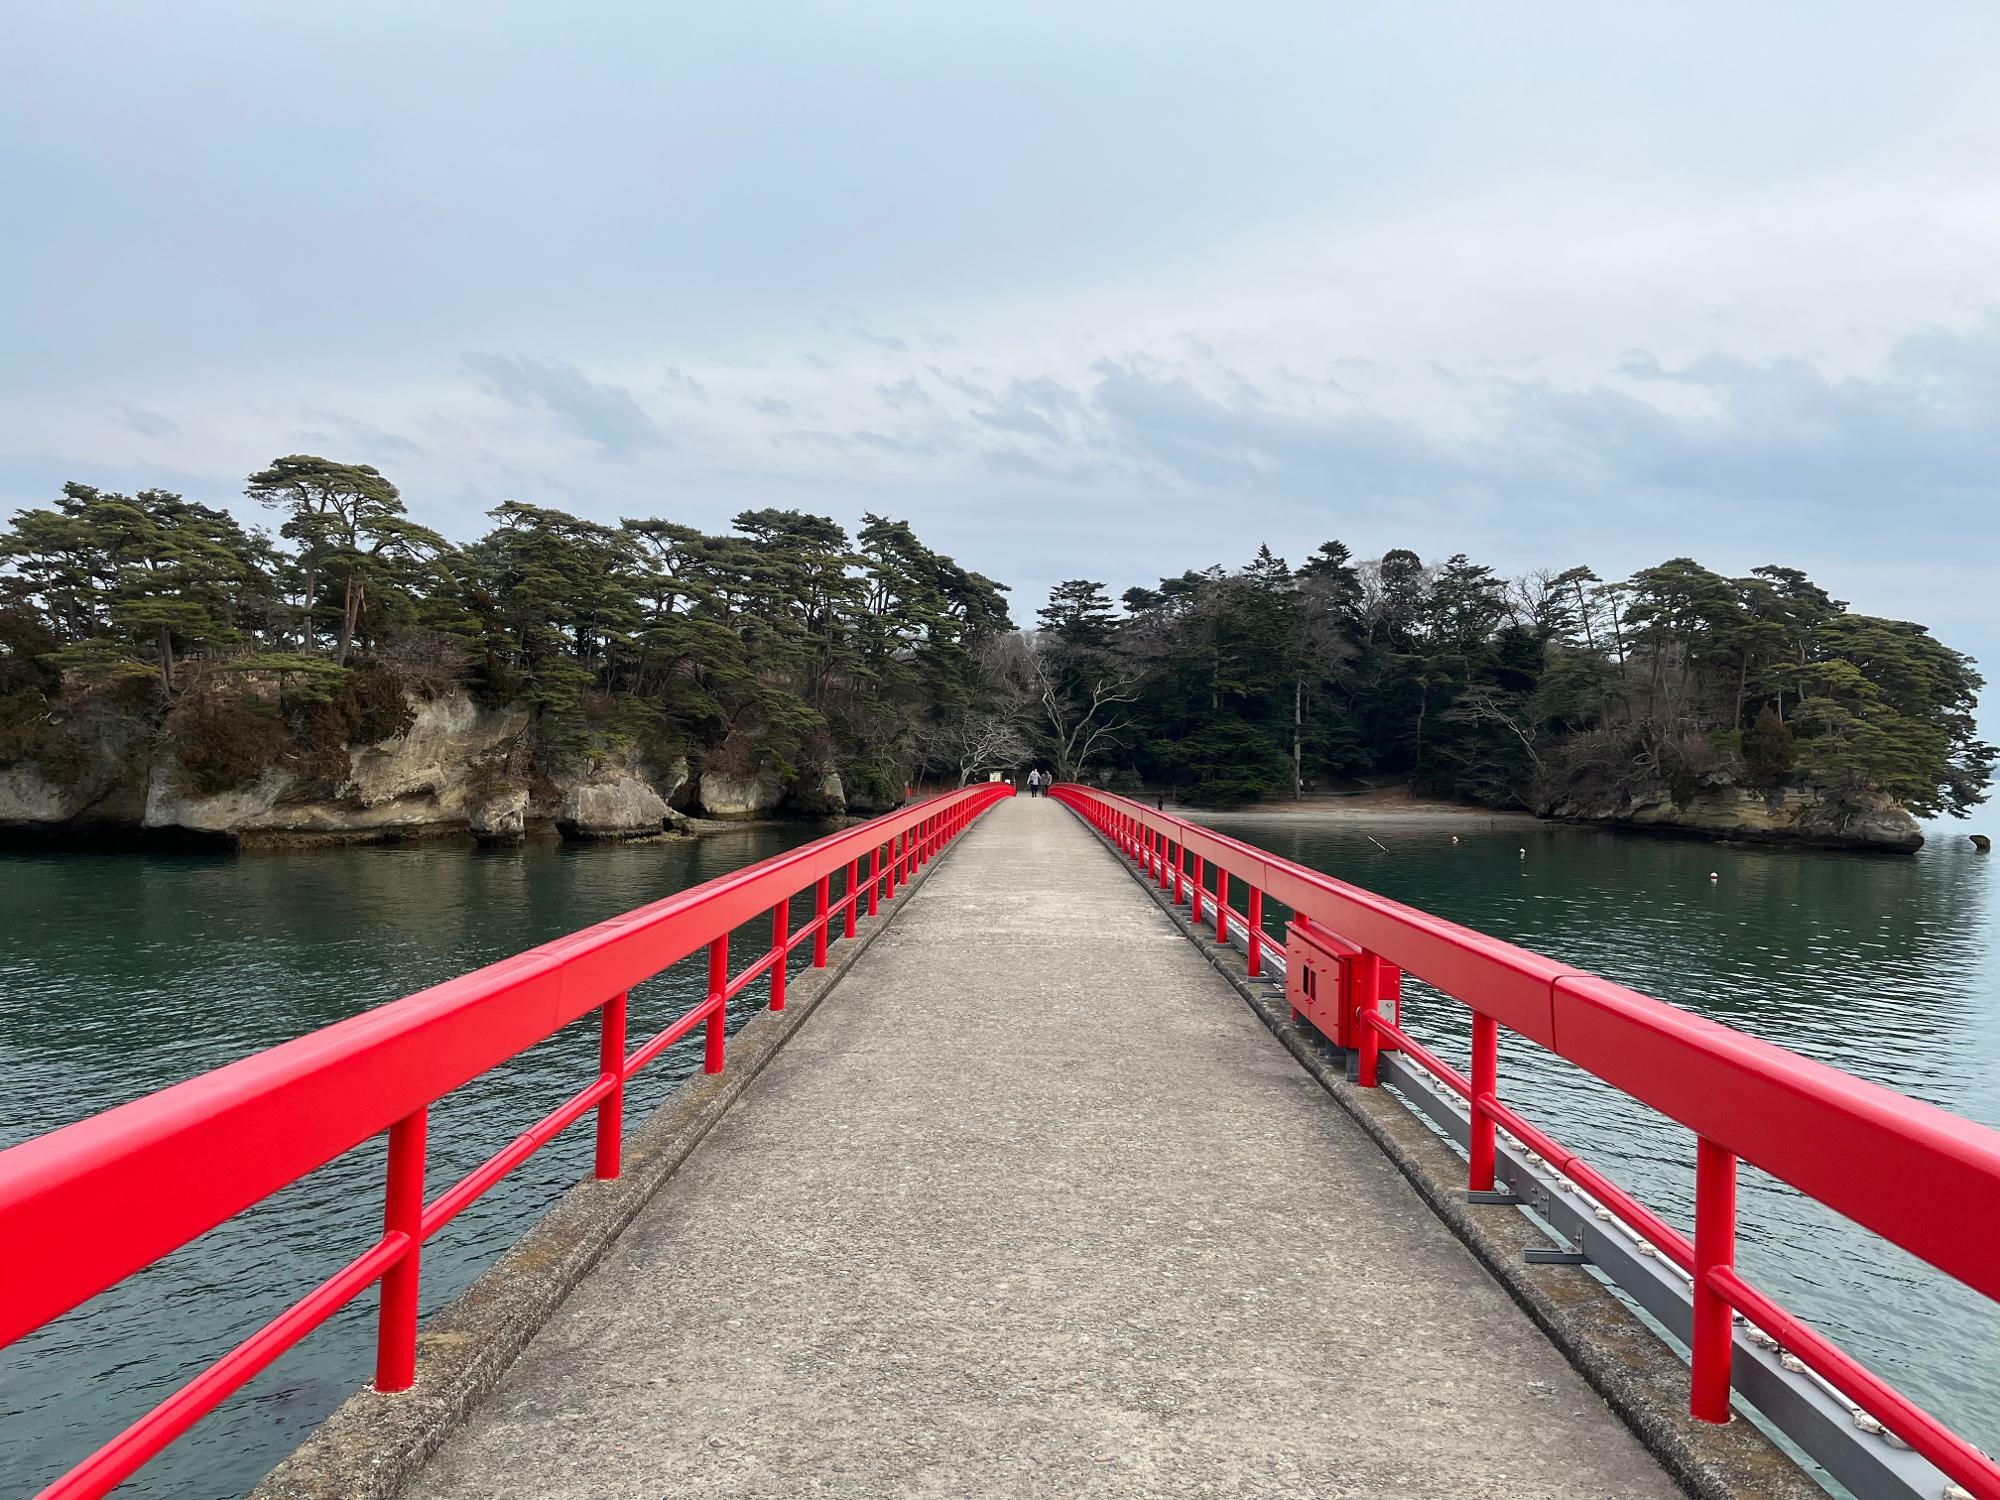 ▲ 子供の頃に歩いたこの橋の手すりはとても高い位置に感じたものだが、現在では腰の高さほどしかない。福浦島の歴史は相当長いのだ。